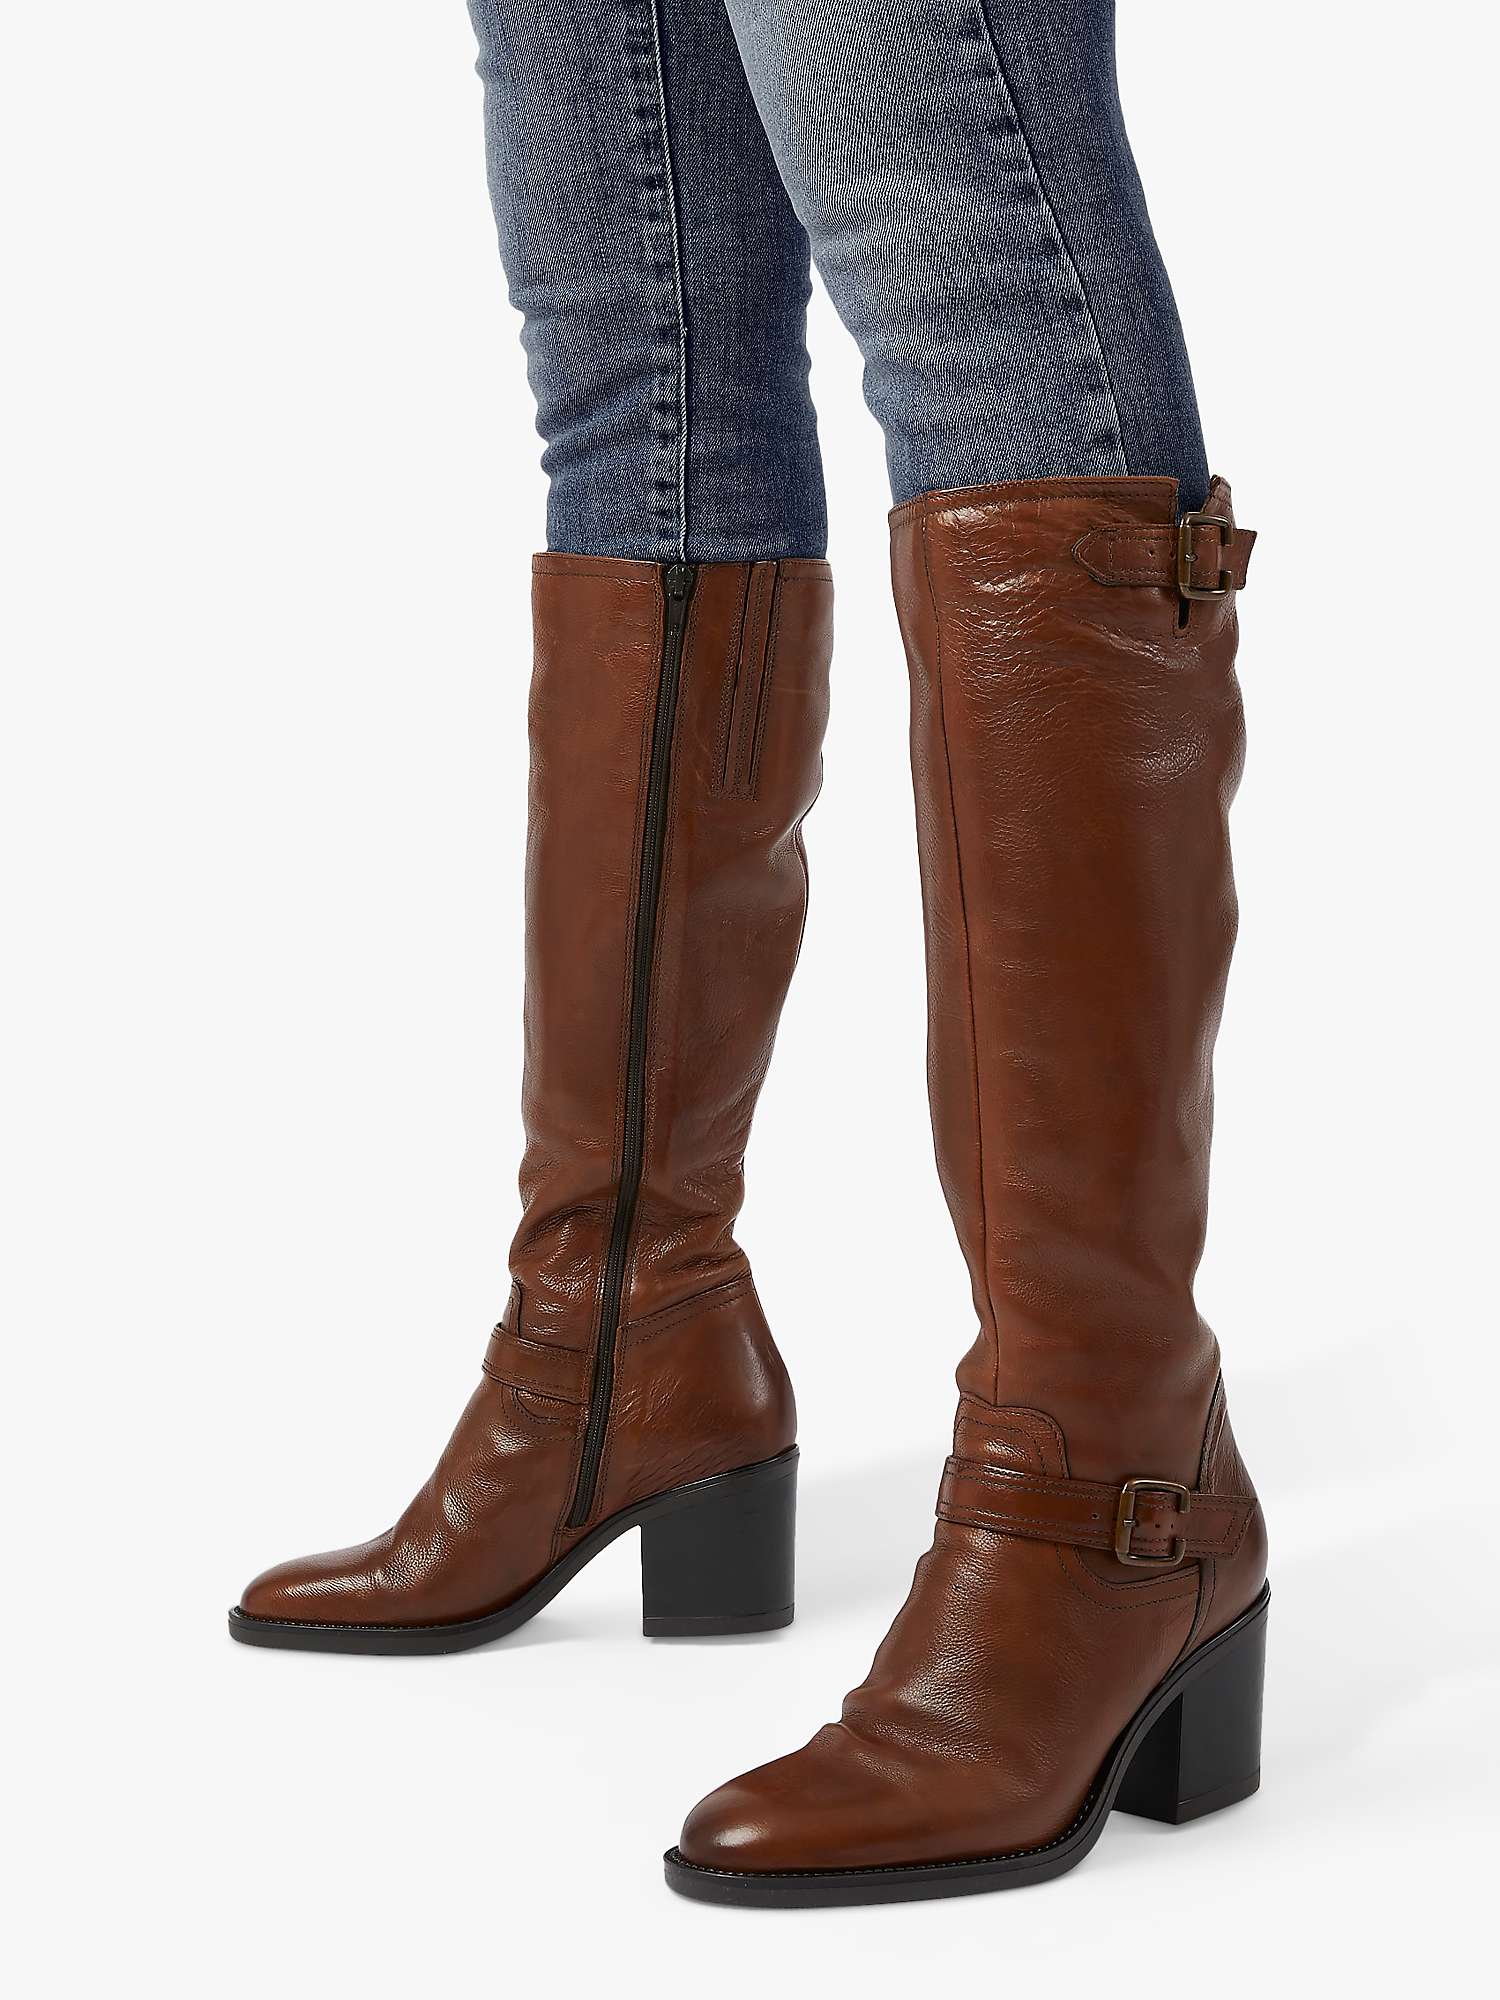 Buy Dune Trelis Leather Double Buckle Block Heel Knee High Boots Online at johnlewis.com